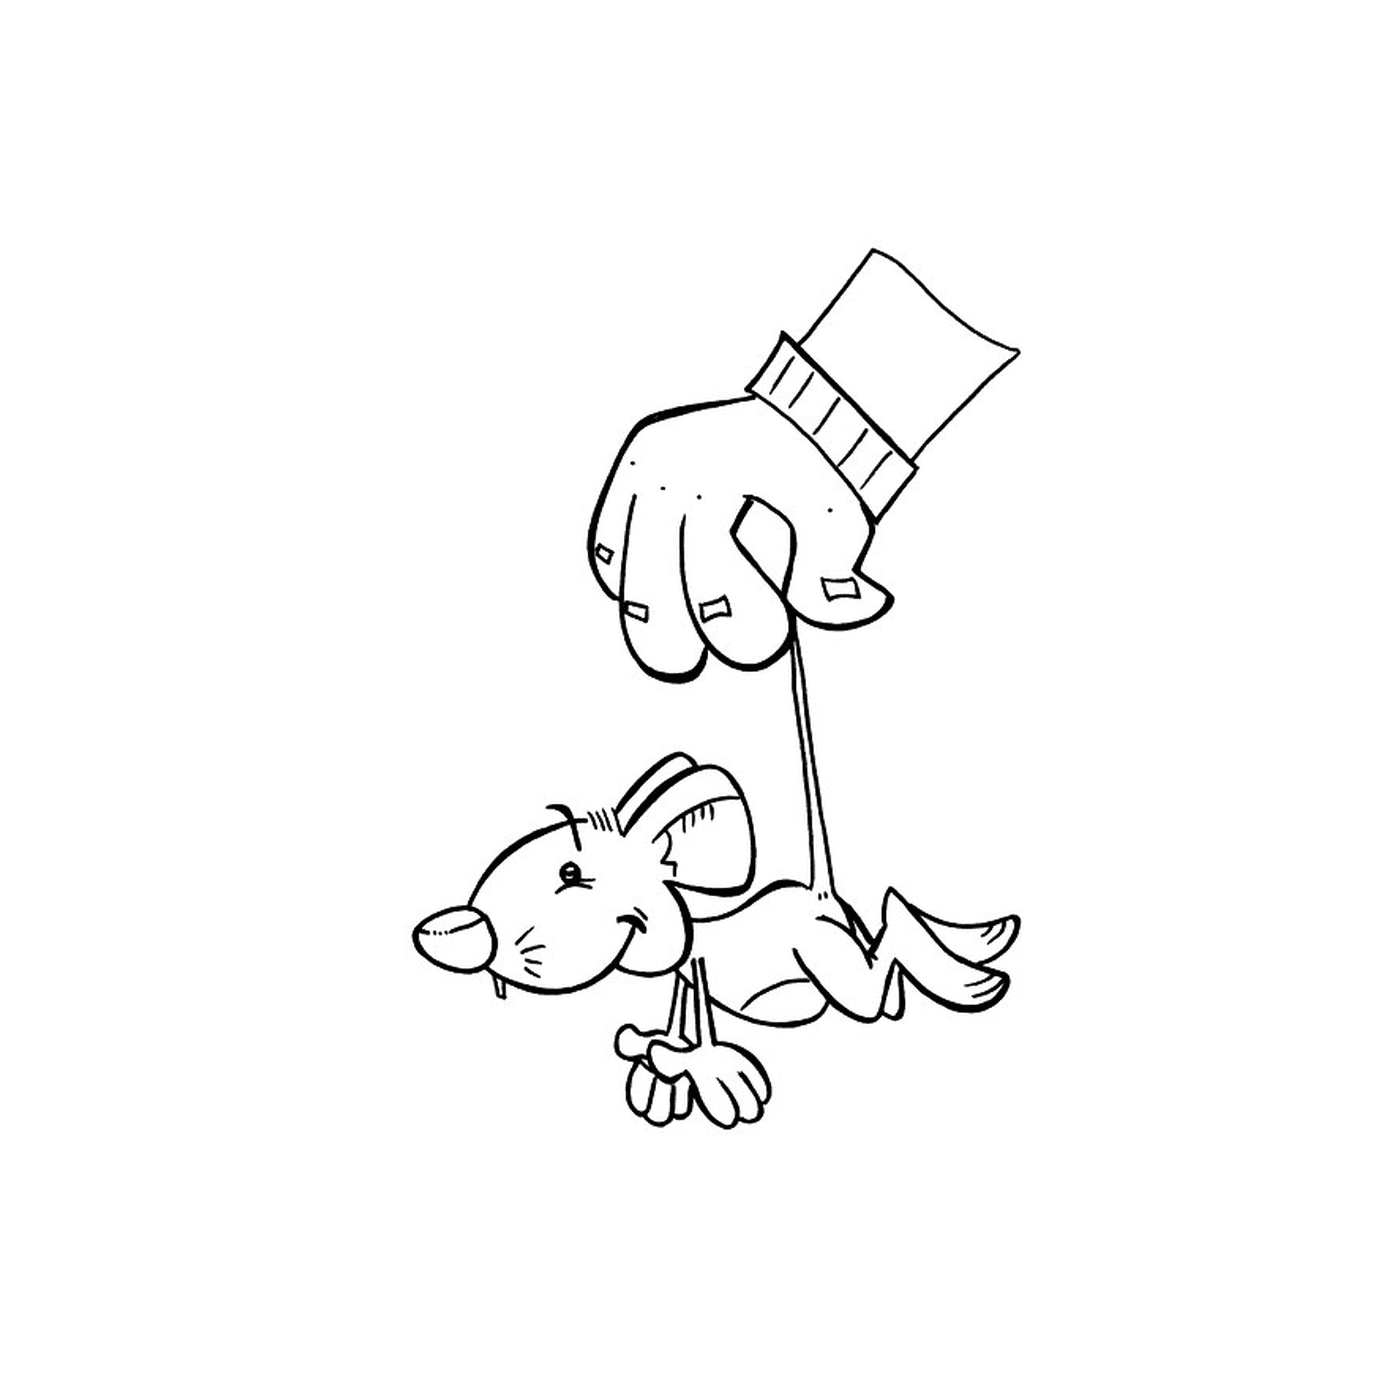  Uma mão segurando uma vara com um cão 